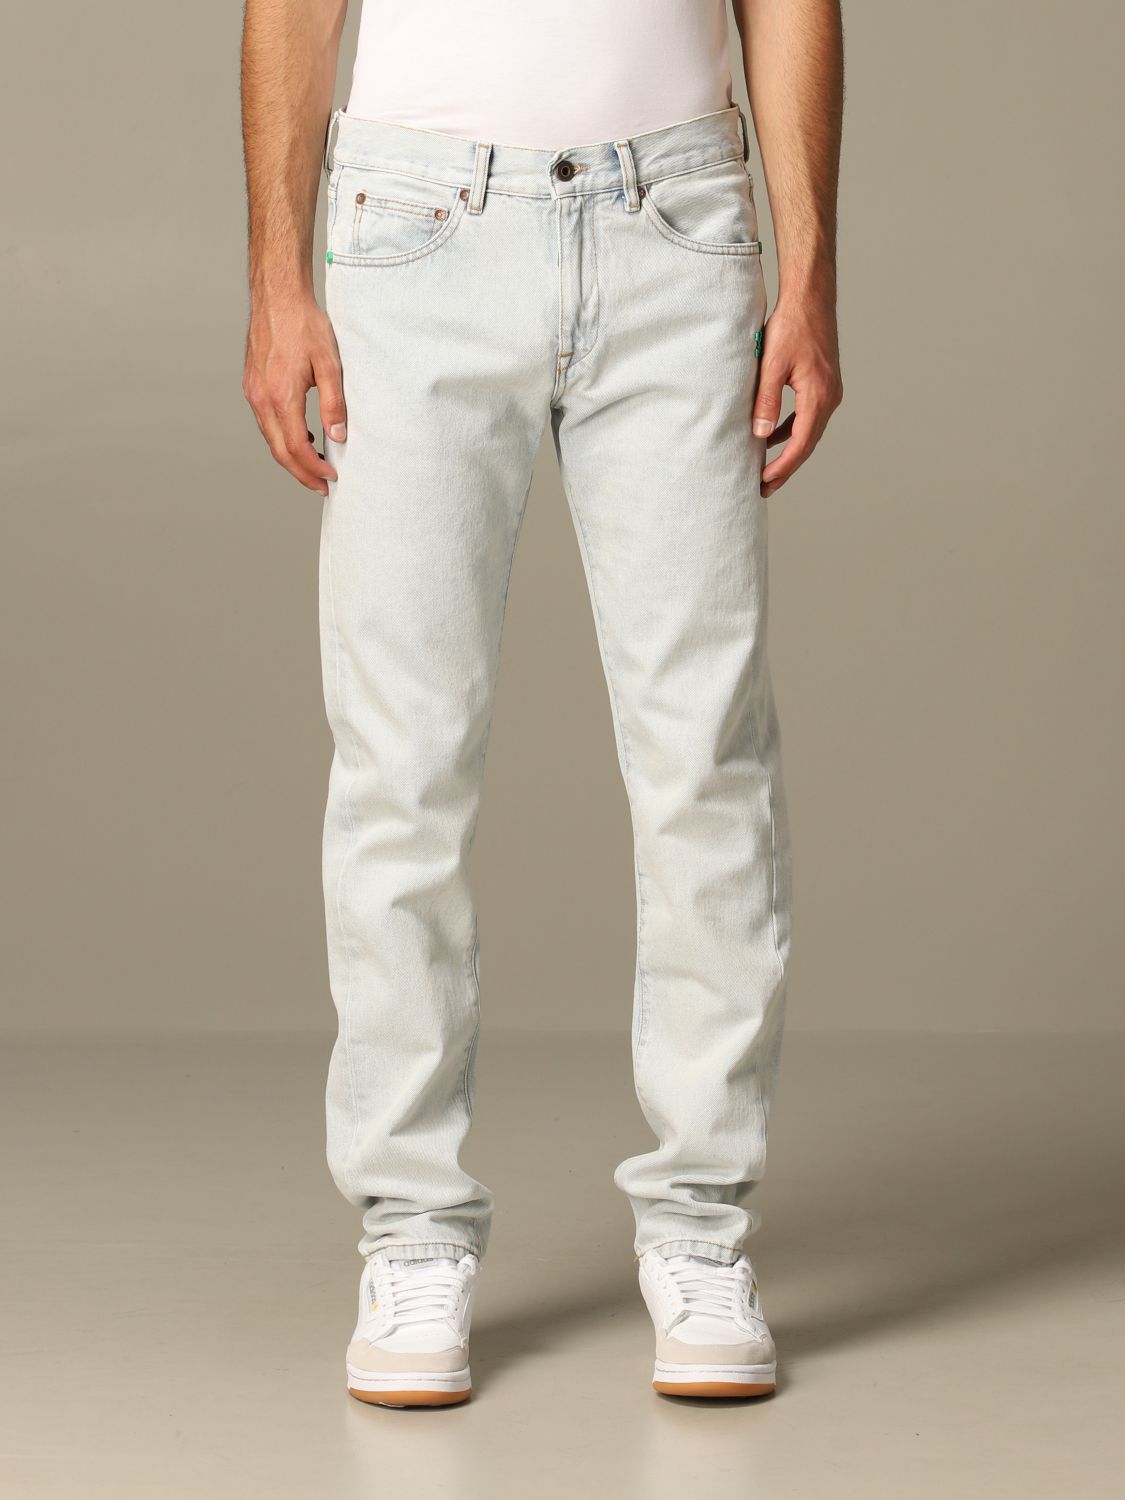 white jeans for men